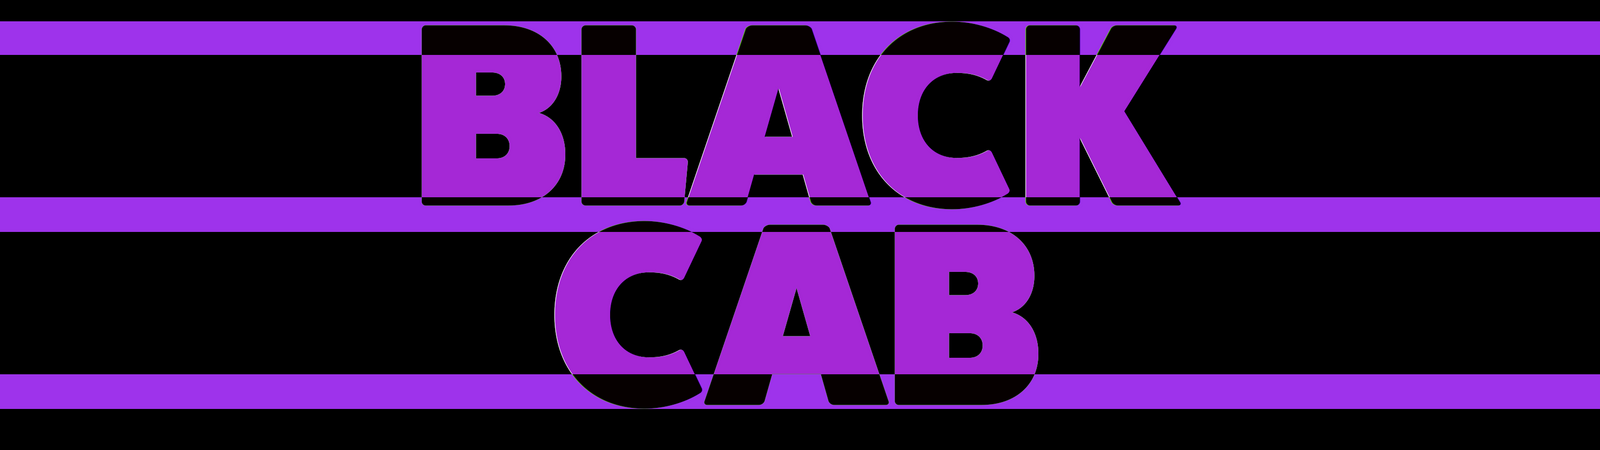 Black Cab